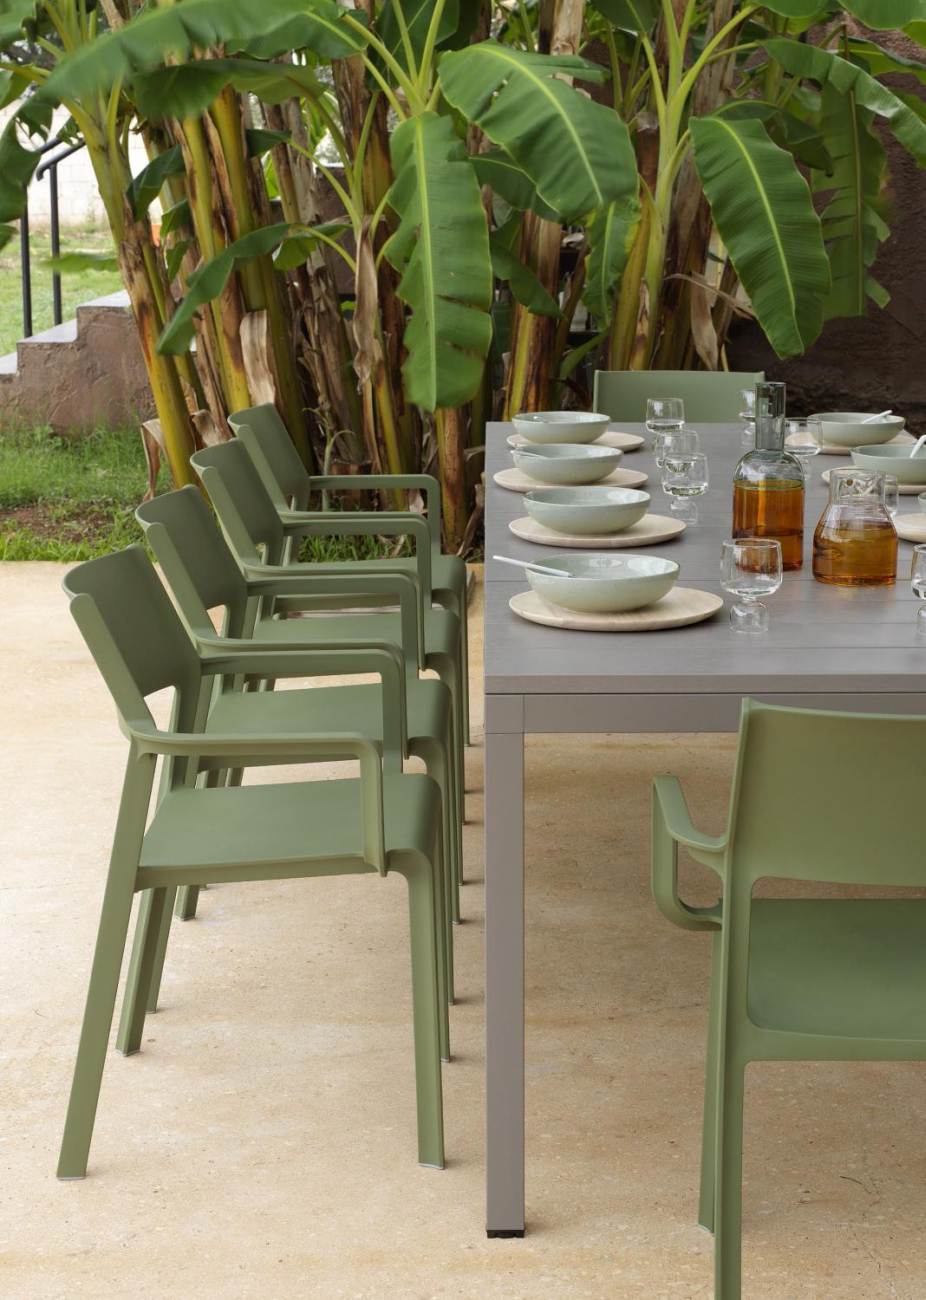 Der Gartenstuhl Trill überzeugt mit seinem modernen Design. Gefertigt wurde er aus Kunststoff, welches einen grünen Farbton besitzt. Das Gestell ist auch aus Kunststoff und hat eine grüne Farbe. Die Sitzhöhe des Stuhls beträgt 47 cm.